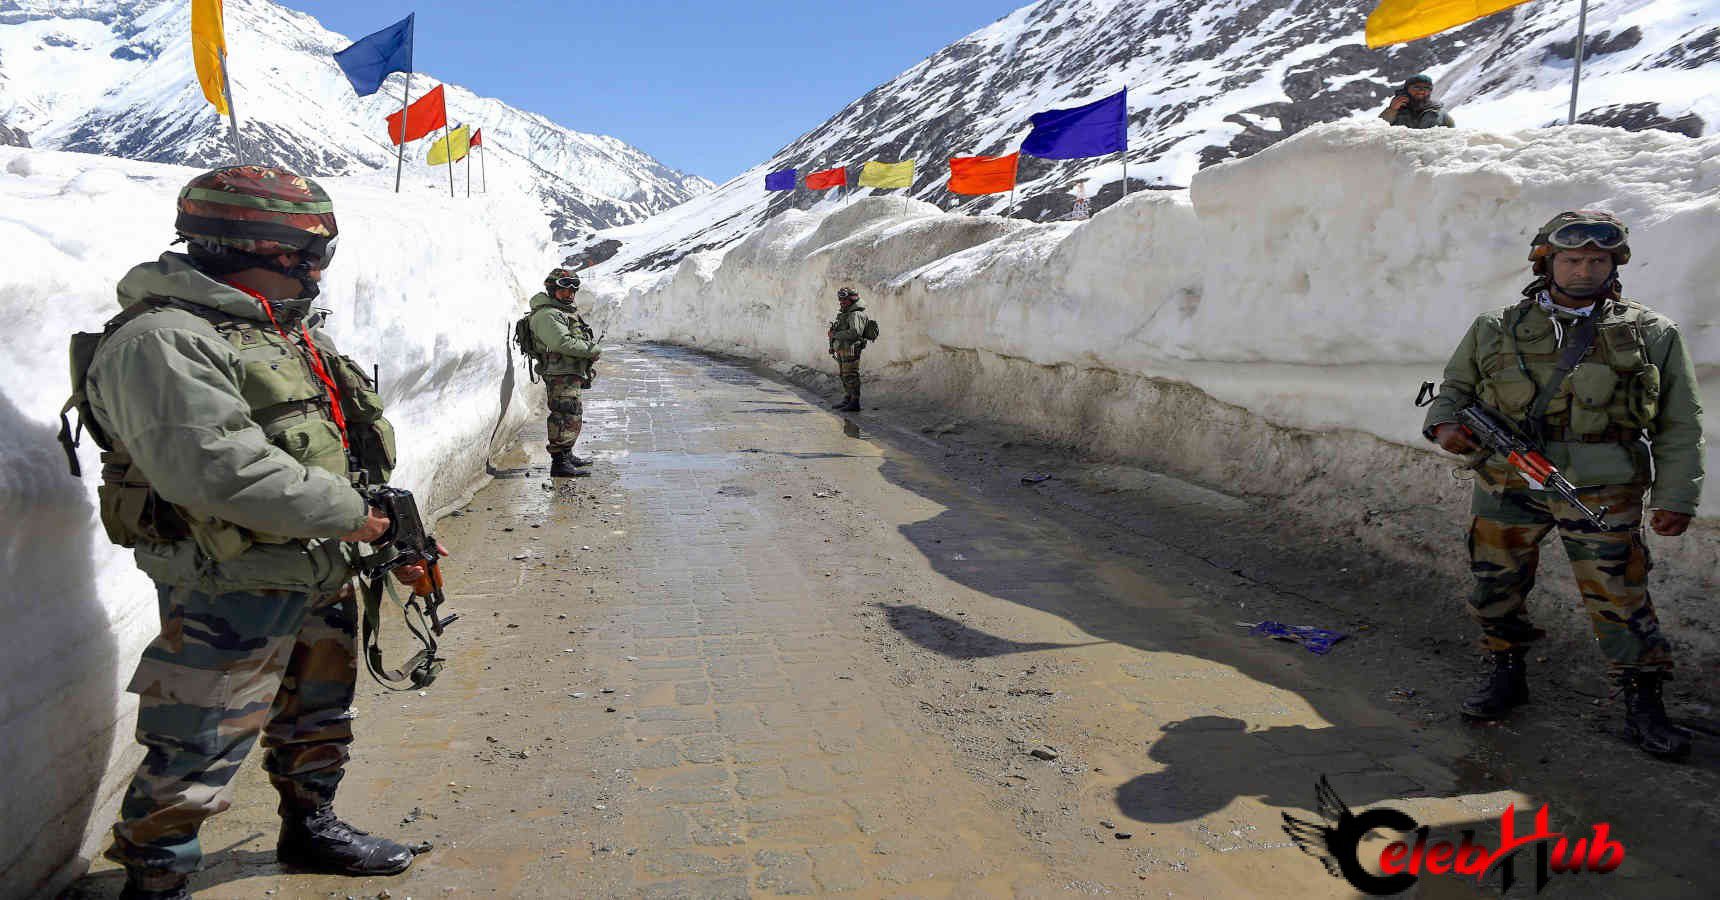 Aksai Chin, Ladak